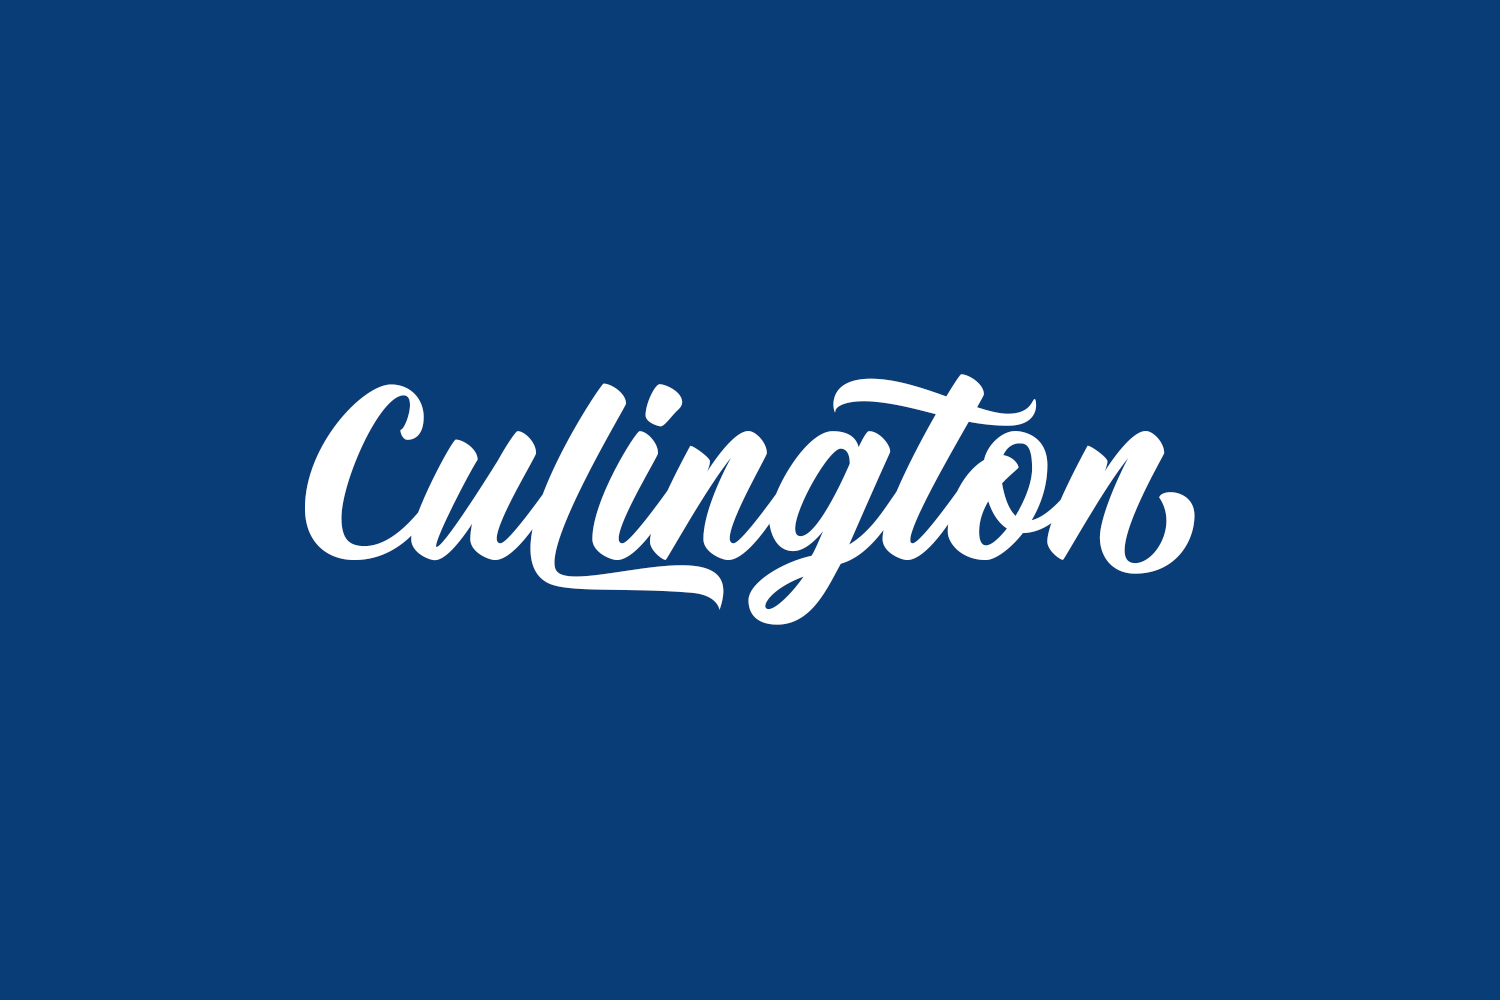 Free Culington Font